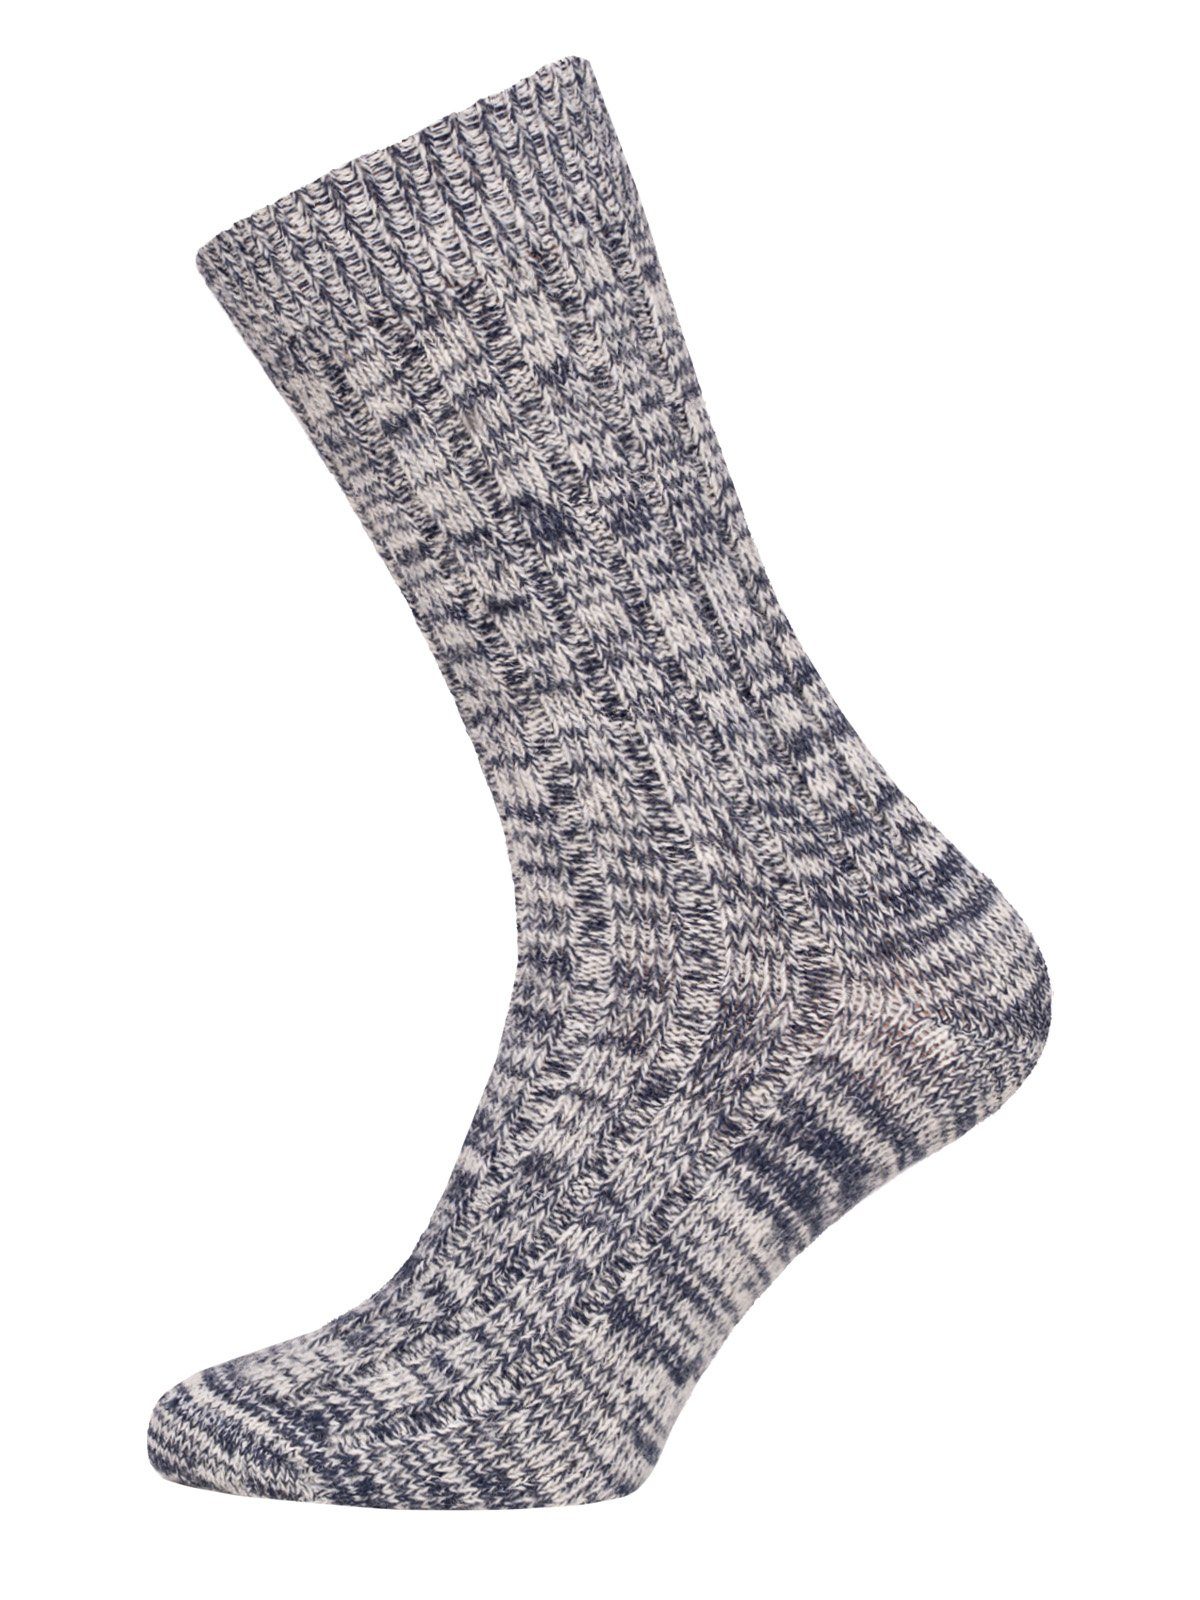 HomeOfSocks Socken Melierte Wollsocken aus 75% Wolle (Schurwolle) (Paar, 1 Paar) Dünne und warme Wollsocken mit 75% Wollanteil Navy